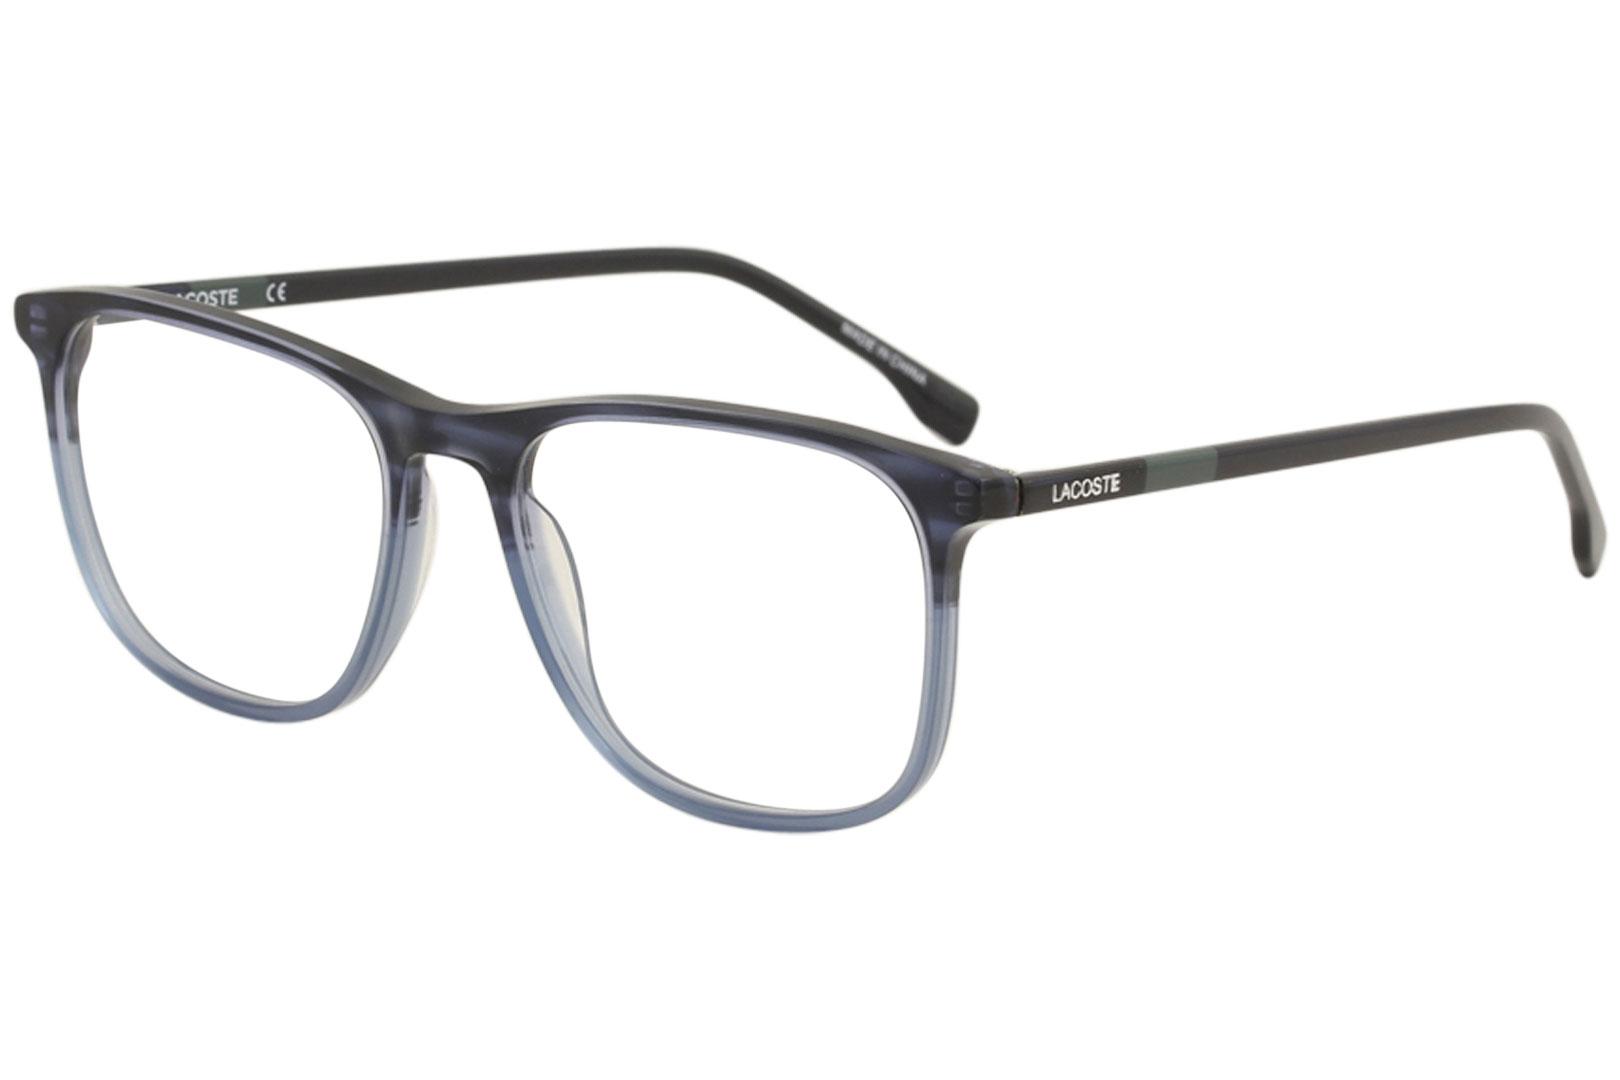 lacoste eyeglasses,OFF 72%,nalan.com.sg